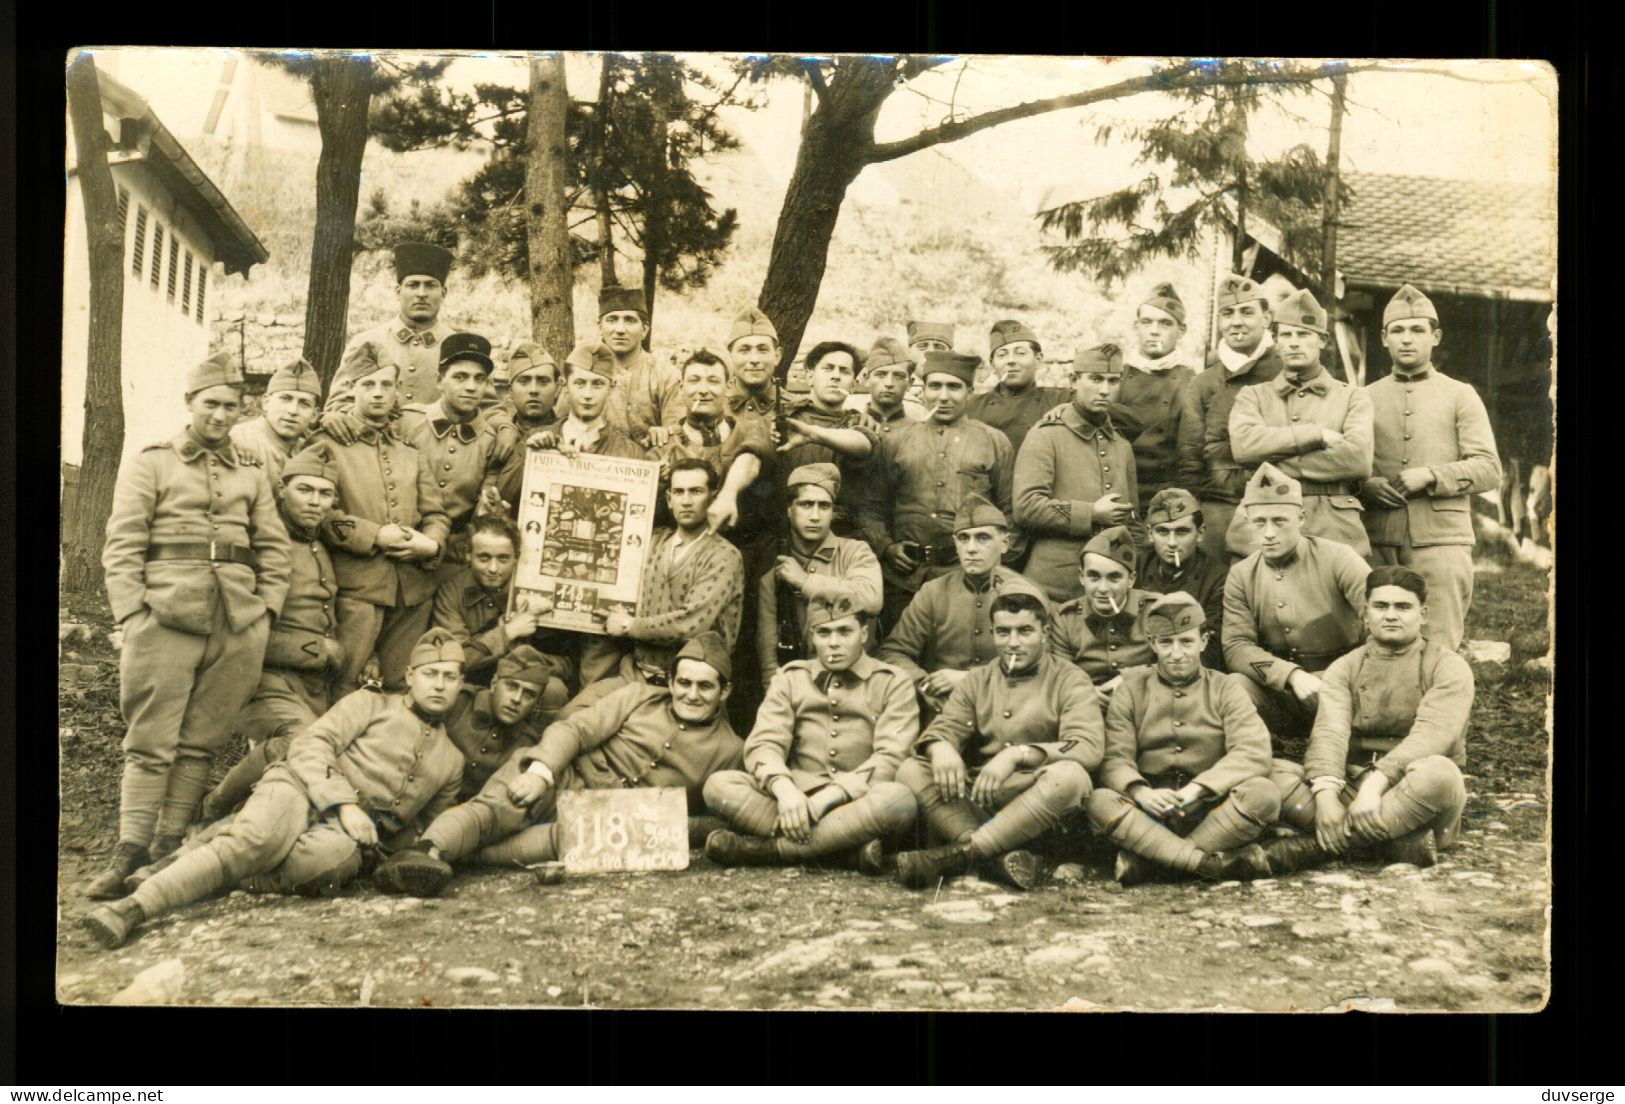 Carte Photo Militaire 1932 Soldats Du 155eme Regiment  RAP.  Belfort DCA ( Format 9cm X 14cm ) Pli Vertical Voir Scans - Régiments